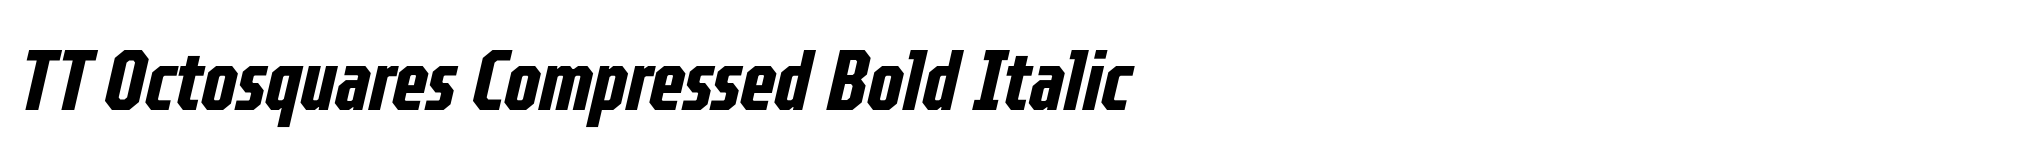 TT Octosquares Compressed Bold Italic image